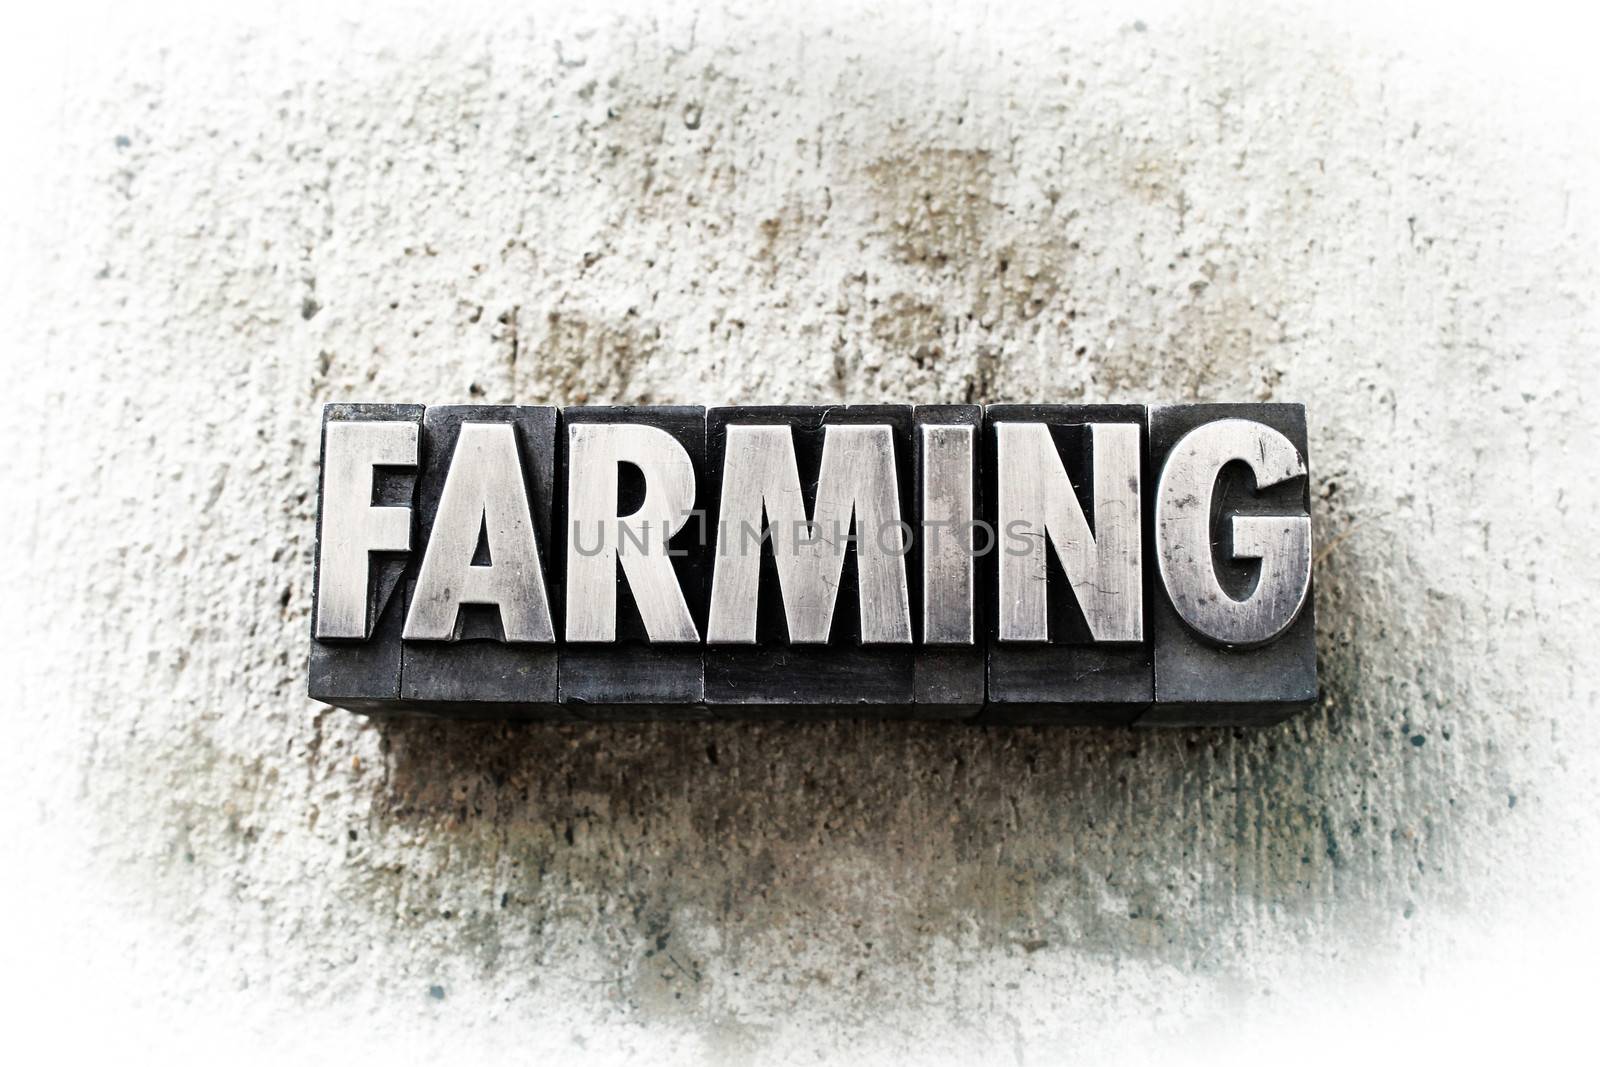 The word "FARMING" written in old vintage letterpress type.